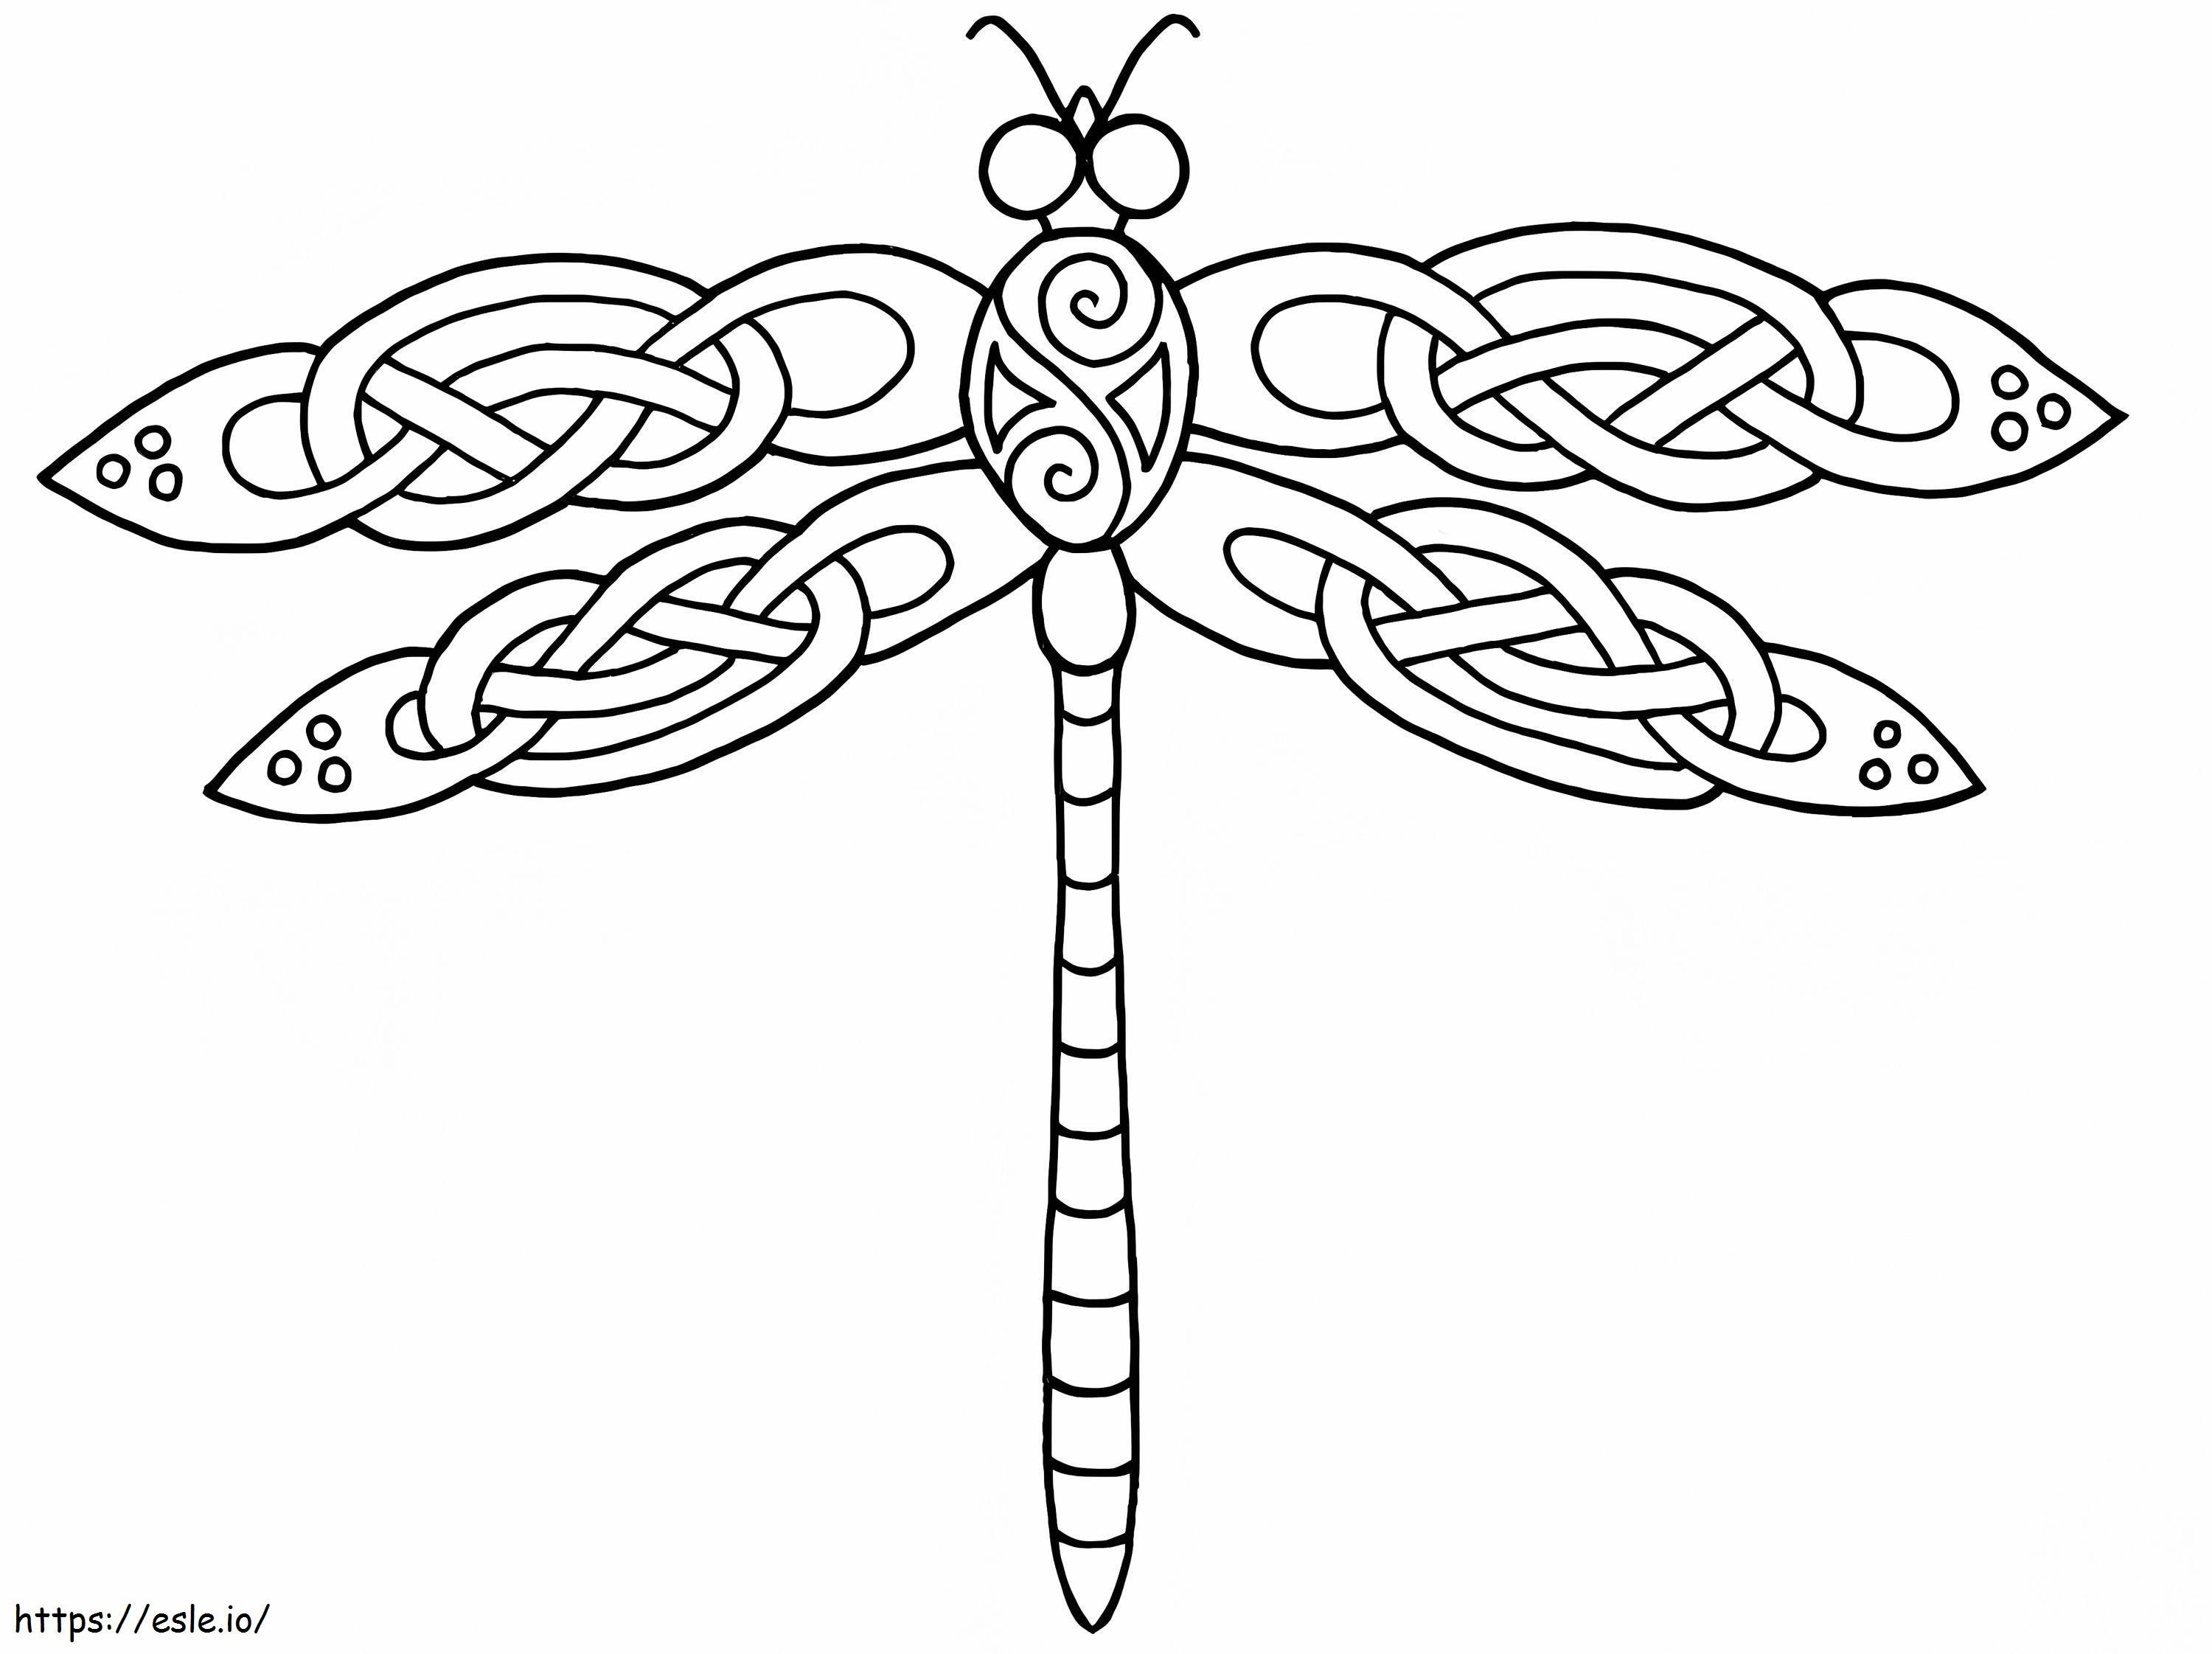 Desain Capung Celtic Gambar Mewarnai